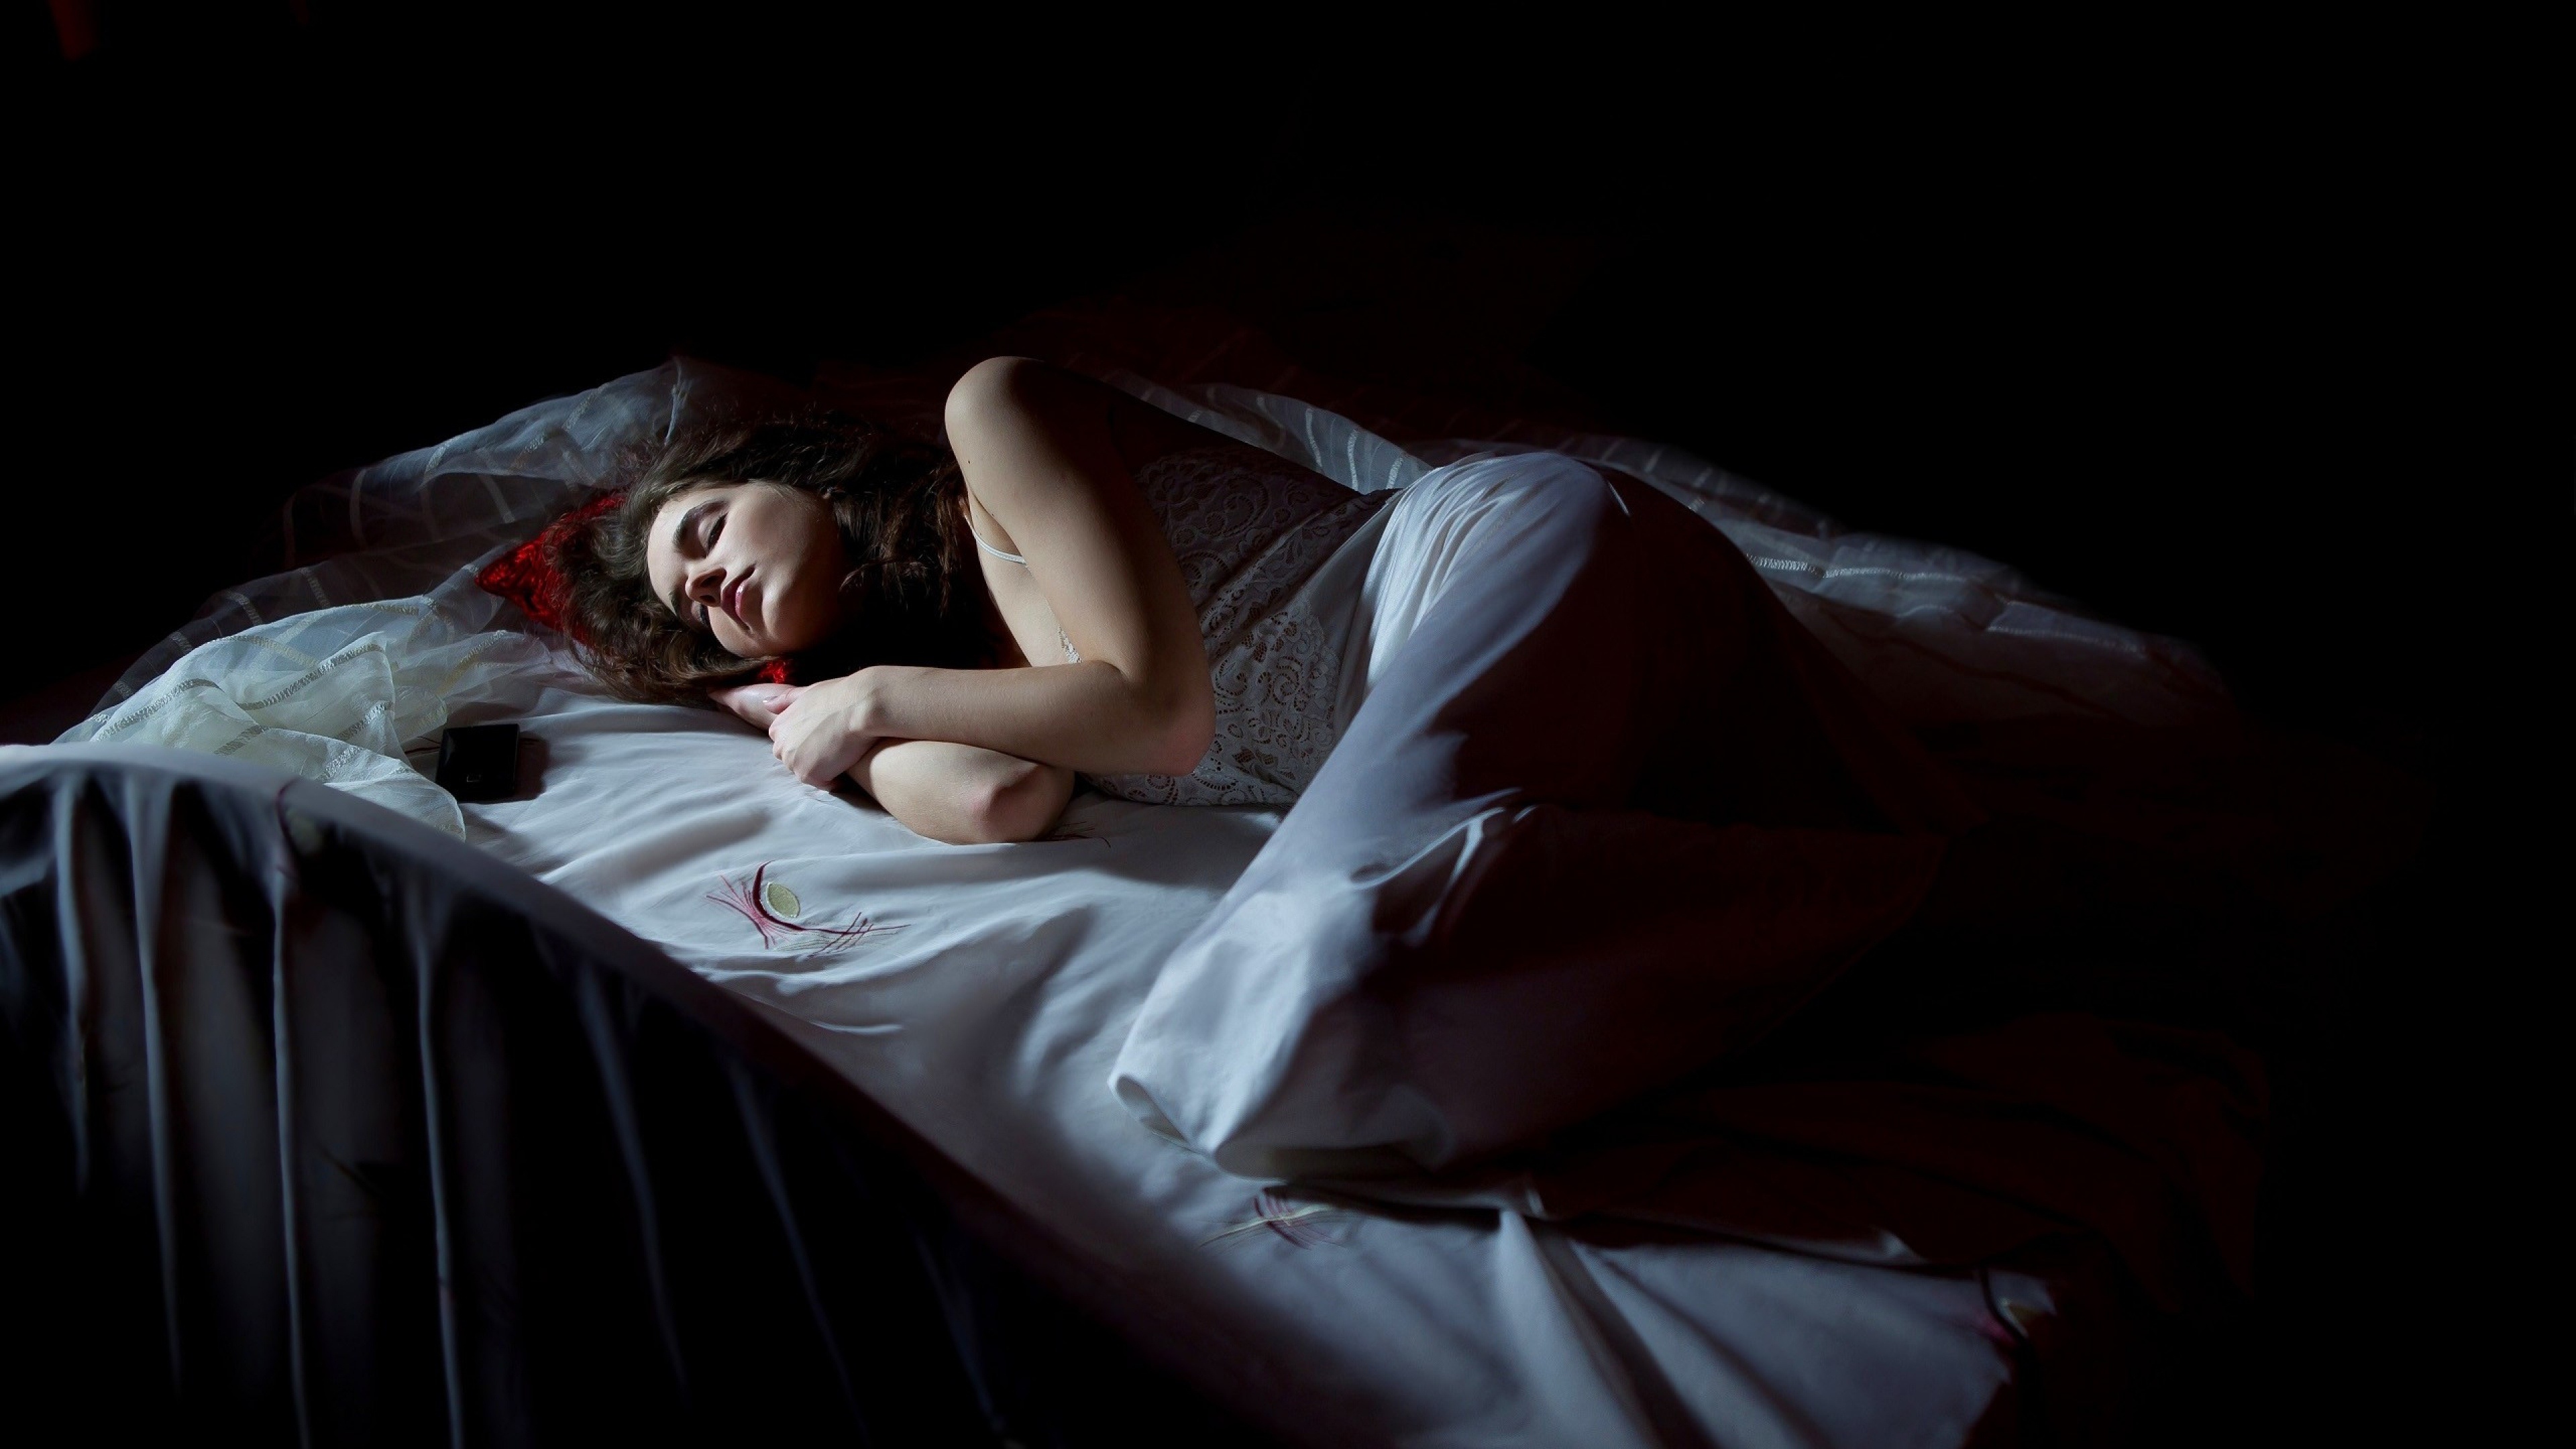 Мужчина в черном во сне. Девушка в кровати ночью.